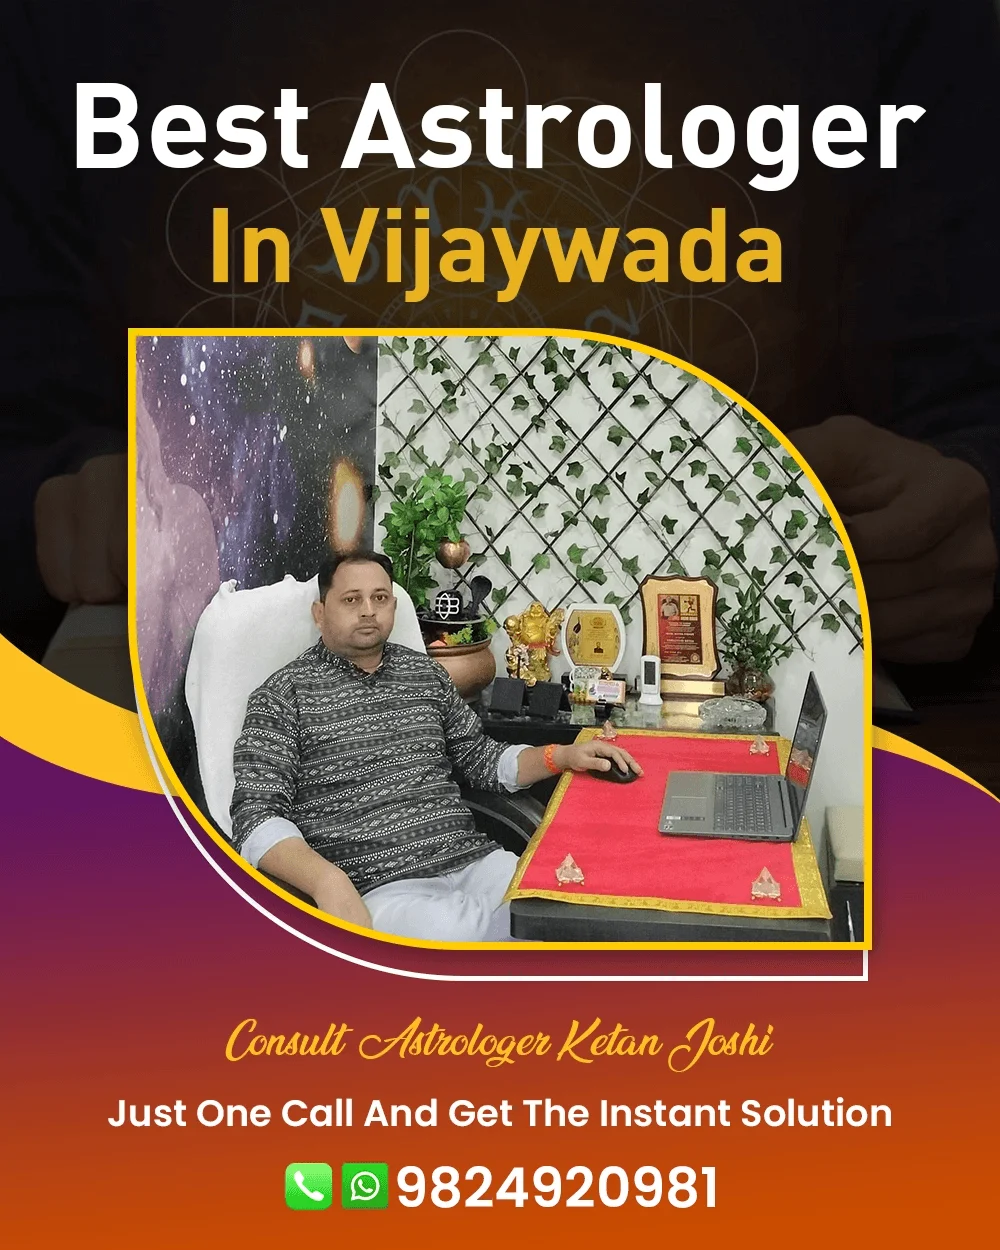 Best Astrologer In Vijaywada